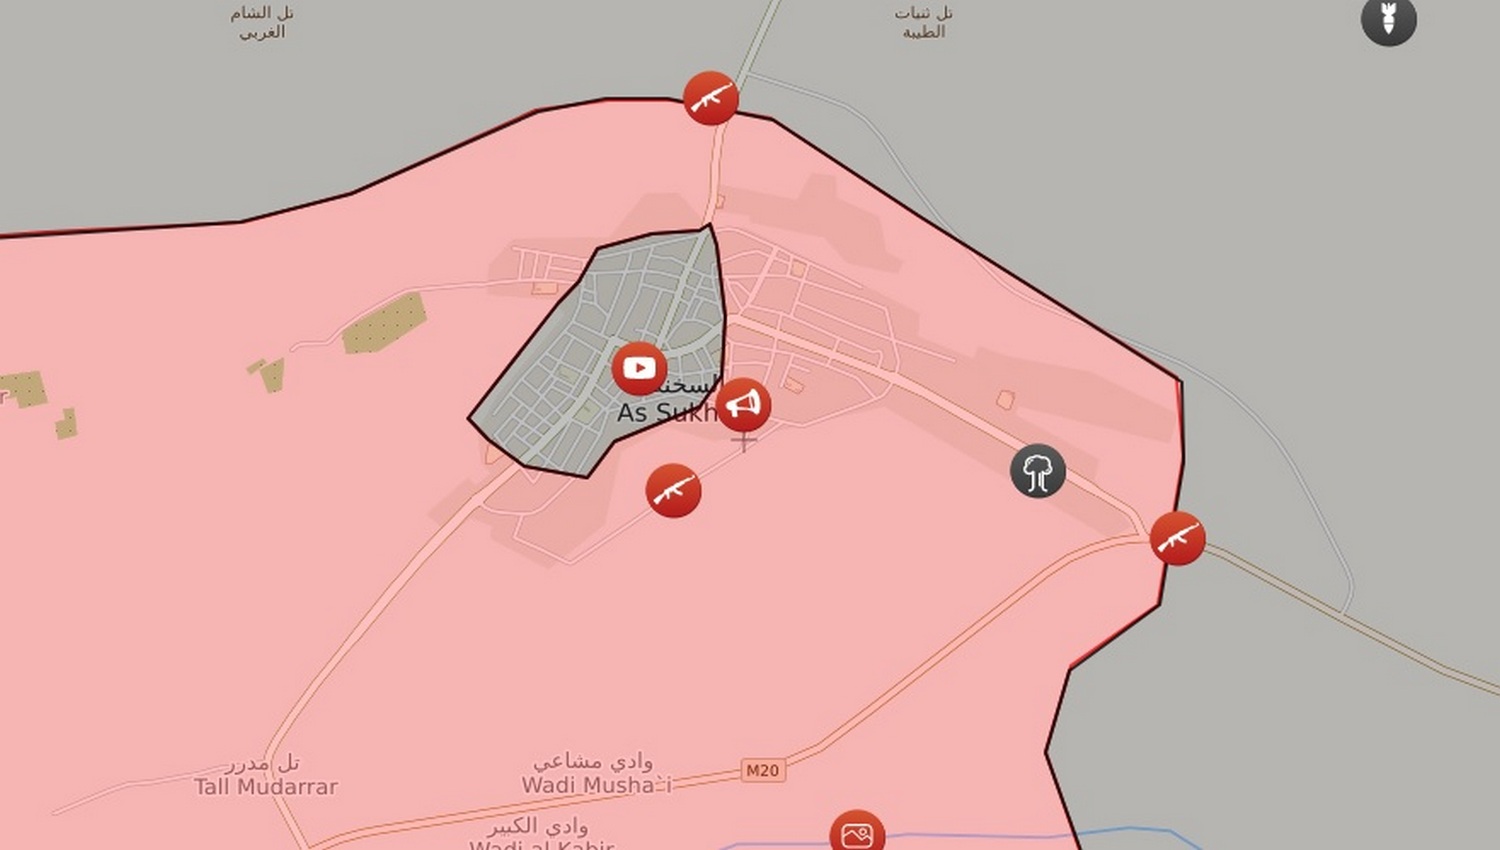 ИГ продолжает сопротивление в городе Ас-Сухна сирийской провинции Хомс